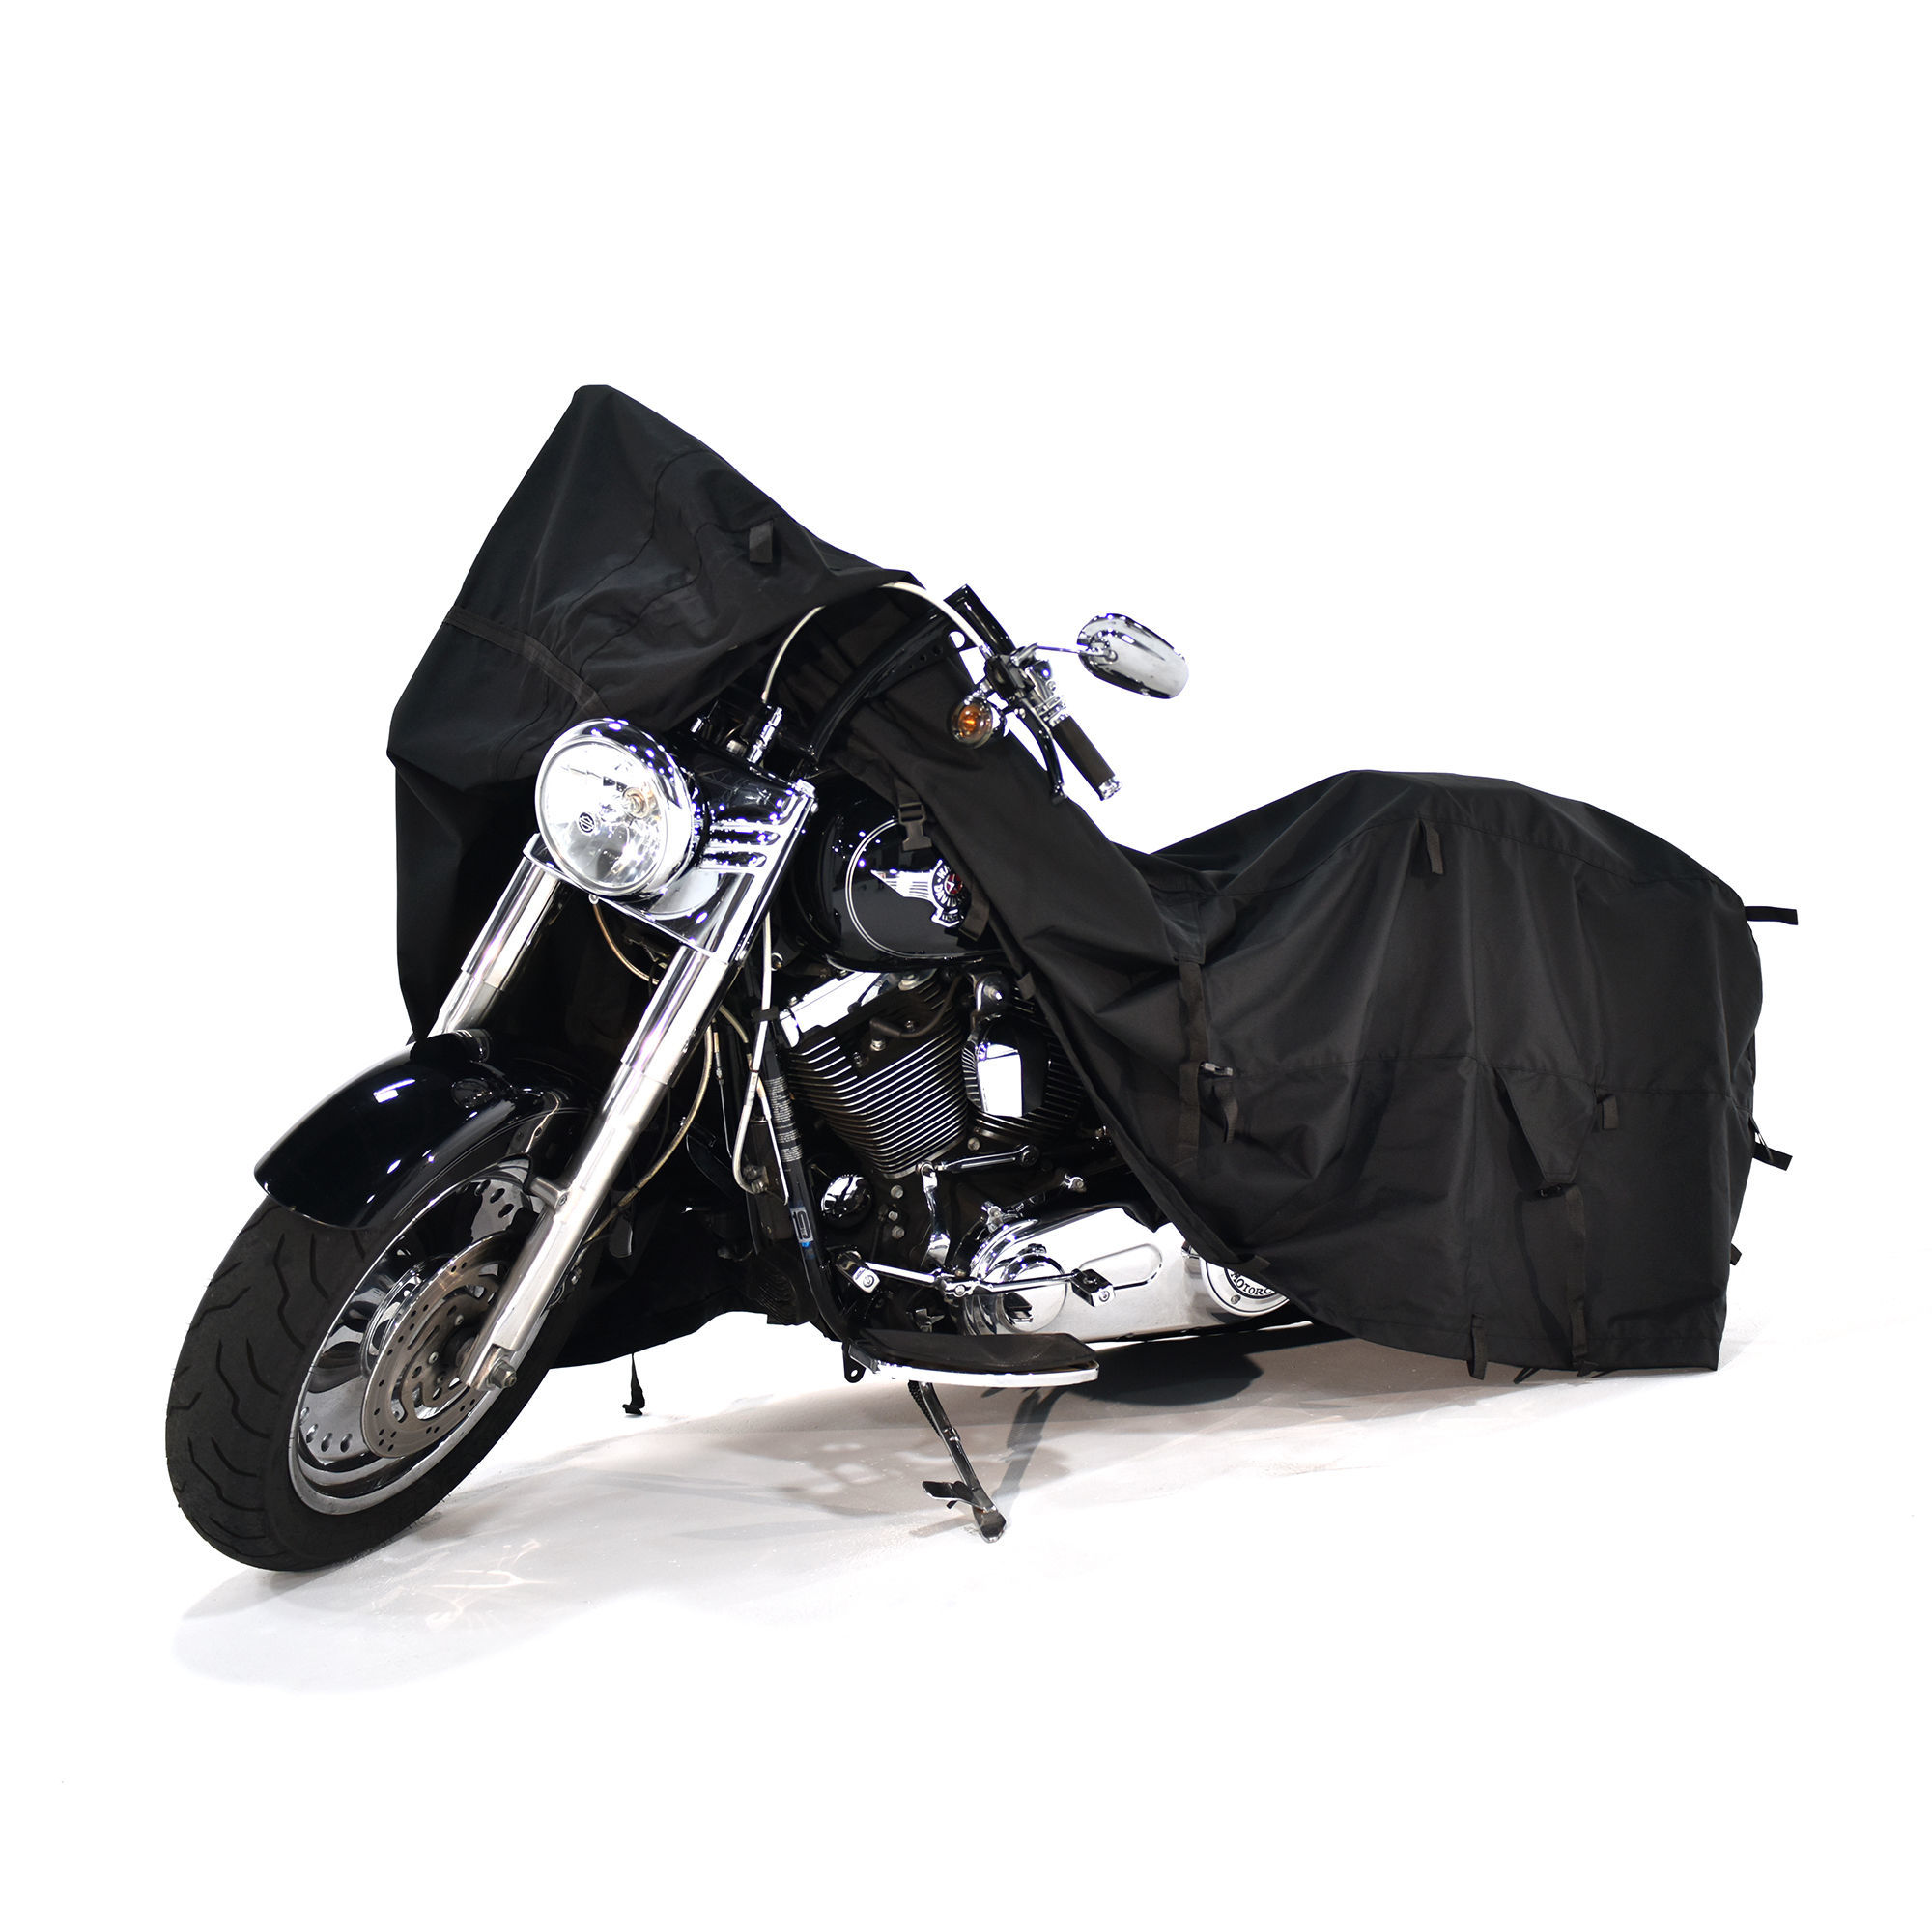 Acheter une housse de protection Deluxe pour motos